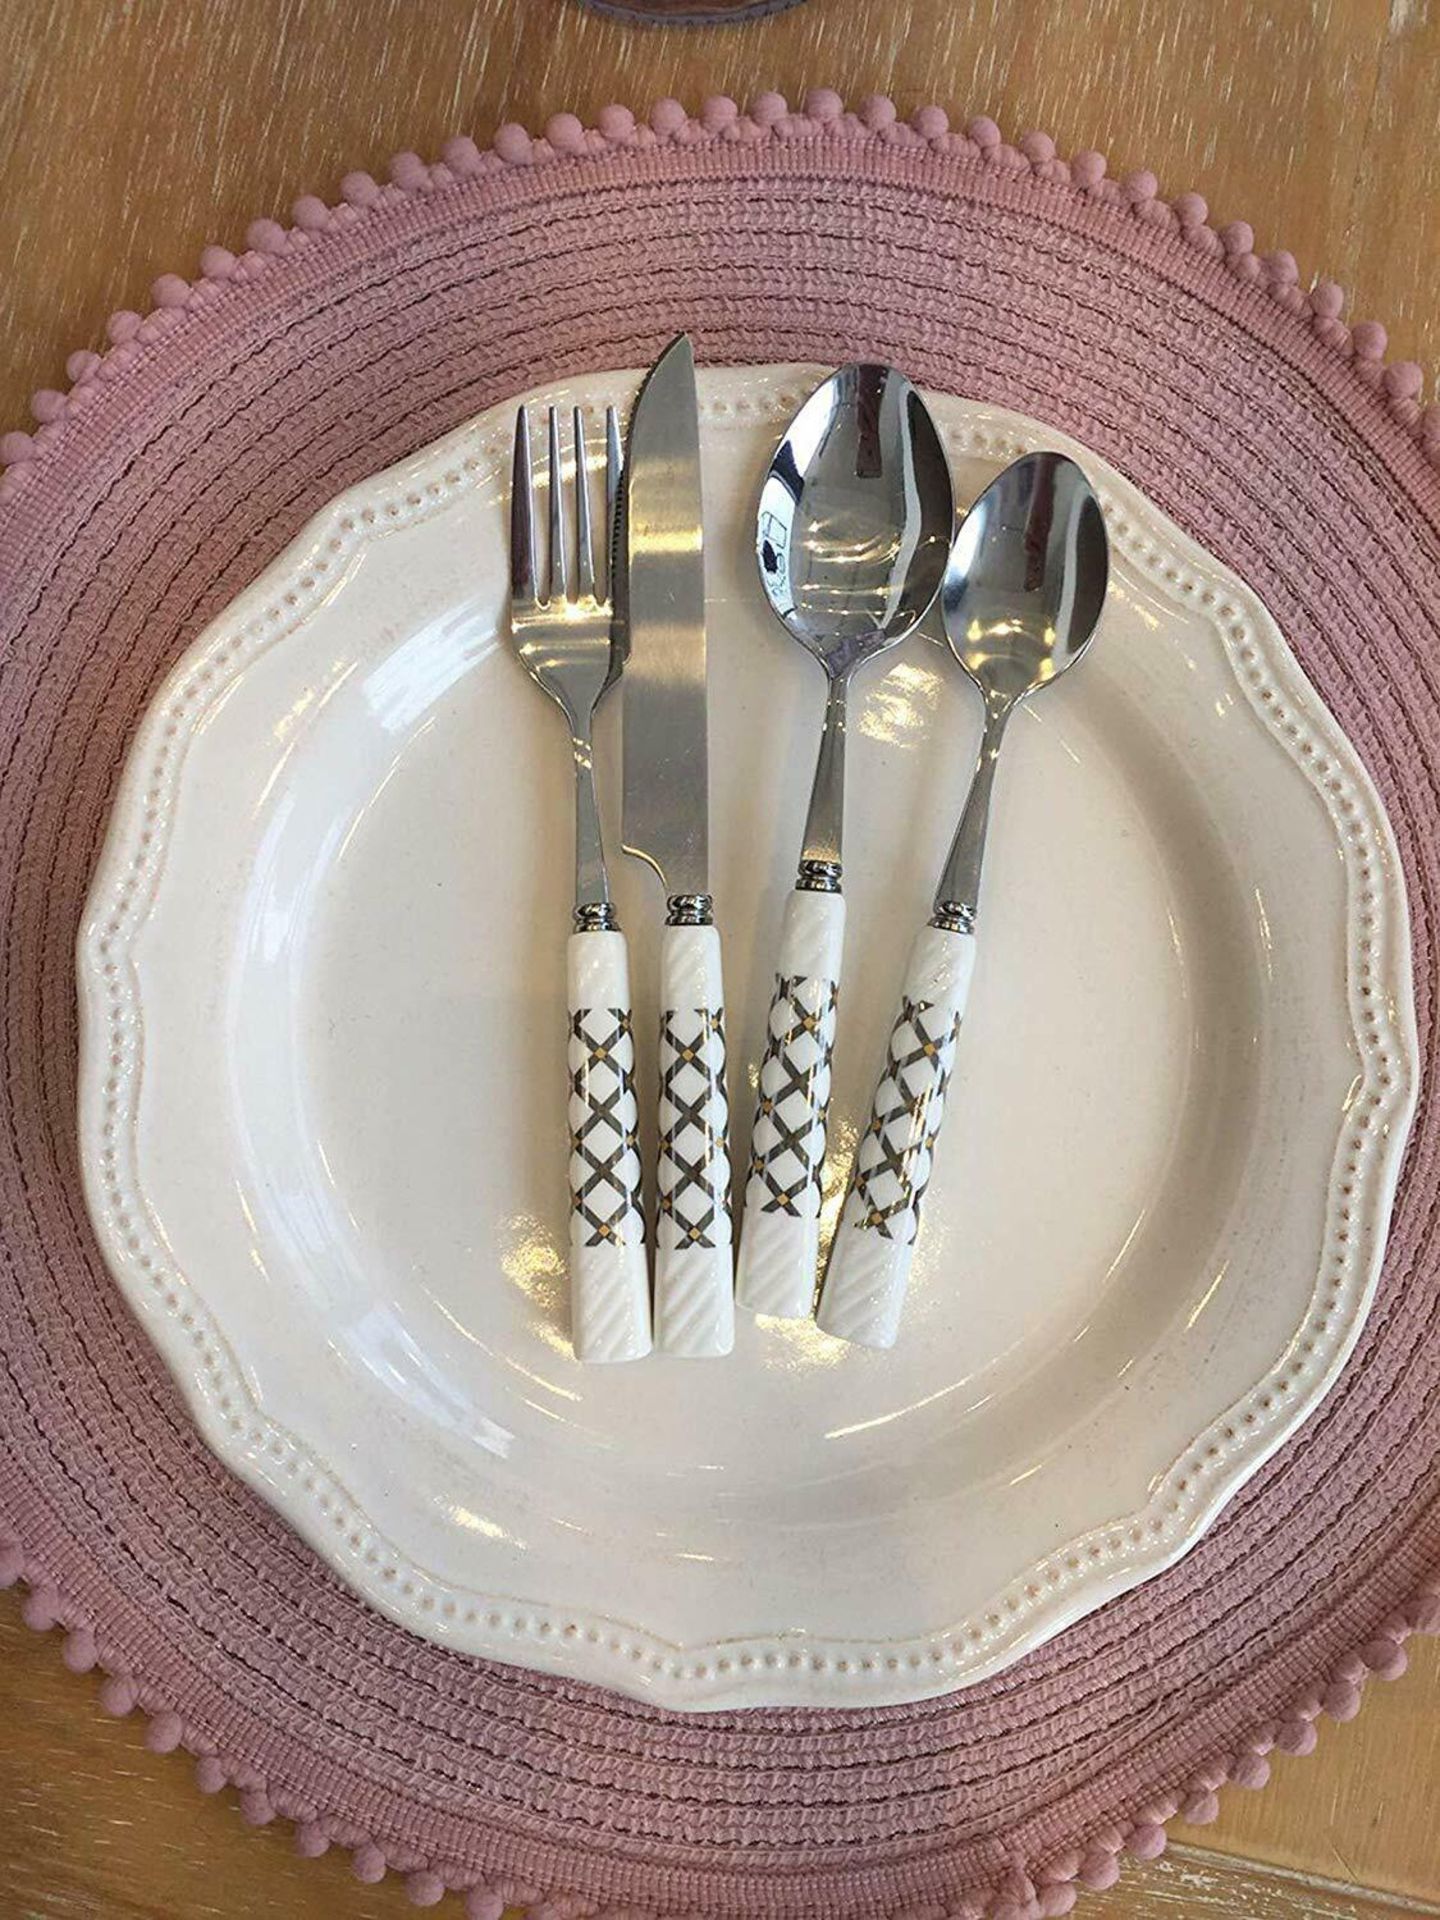 LENKON Cutlery Set,Tableware 24 Piece Stainless Steel Flatware,Silverware Set - Image 5 of 7